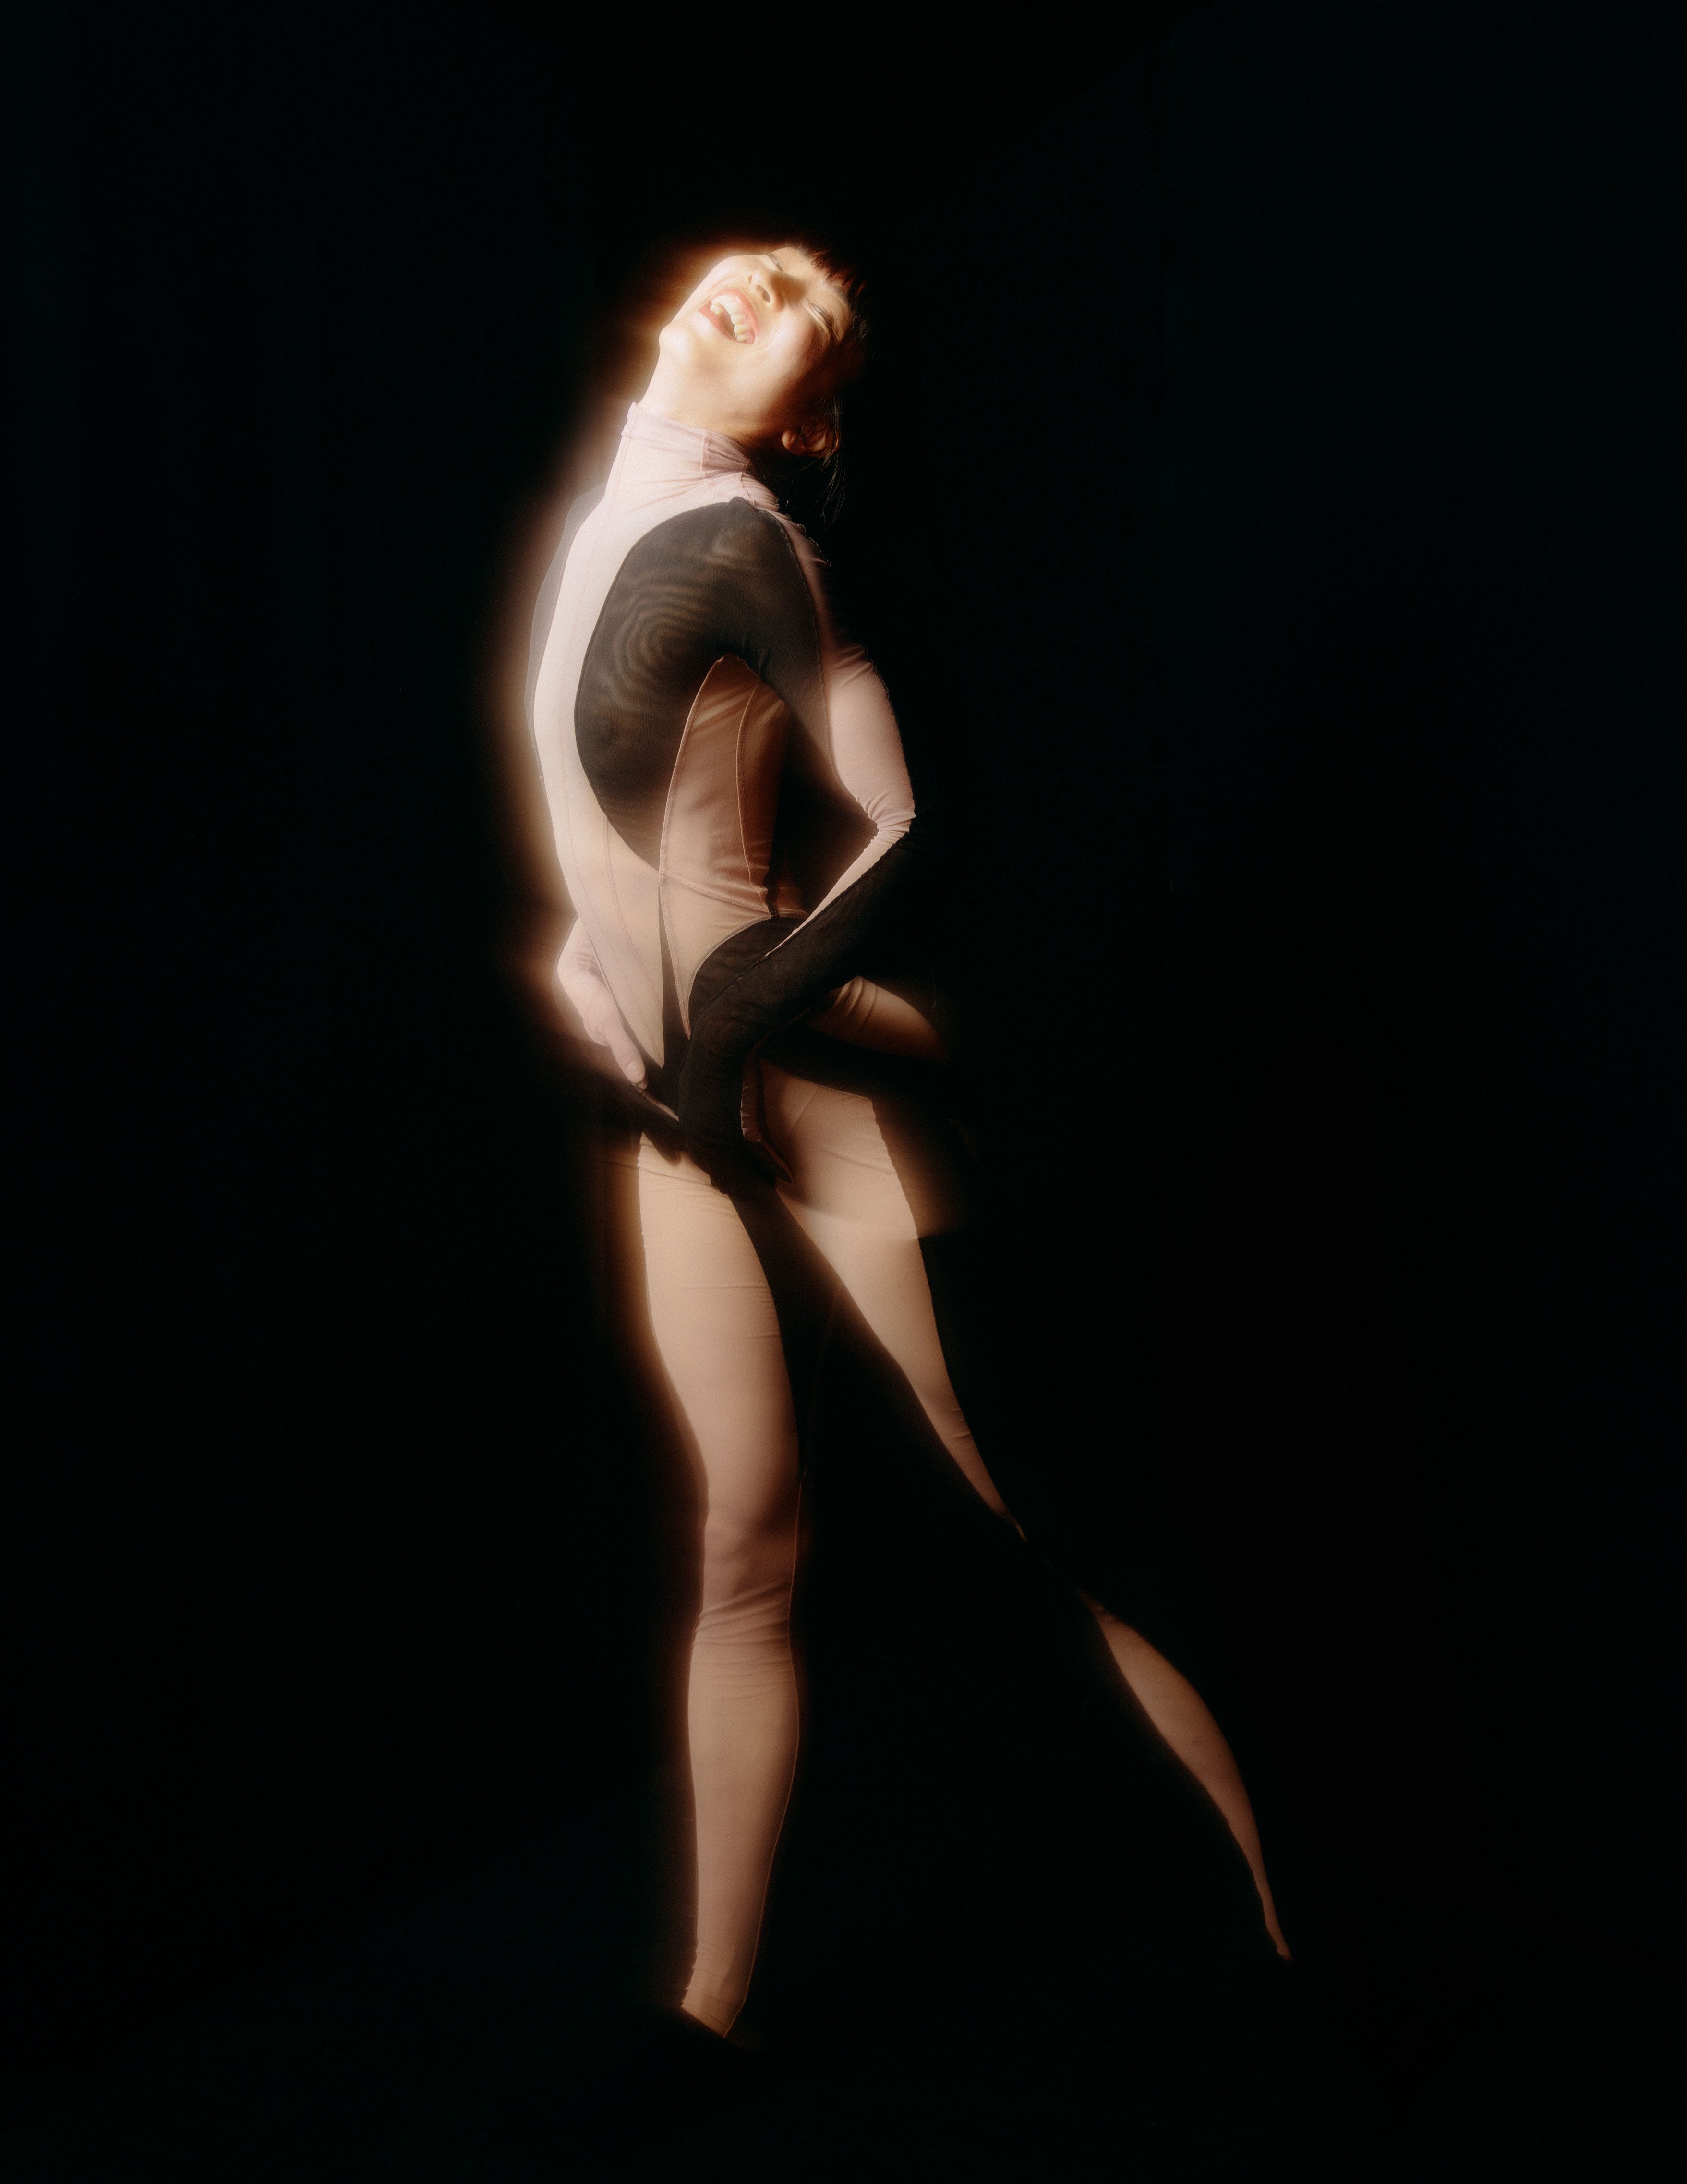 Costume de Mugler par Casey Cadwallader pour Mood porté par Nonoka Kato. Chorégraphie Lasseindra Ninja, Ballet national de Marseille, 2021 © BNM / Louise Desnos - direction image Alice Gavin, artiste associée au BNM (2019-2021)
